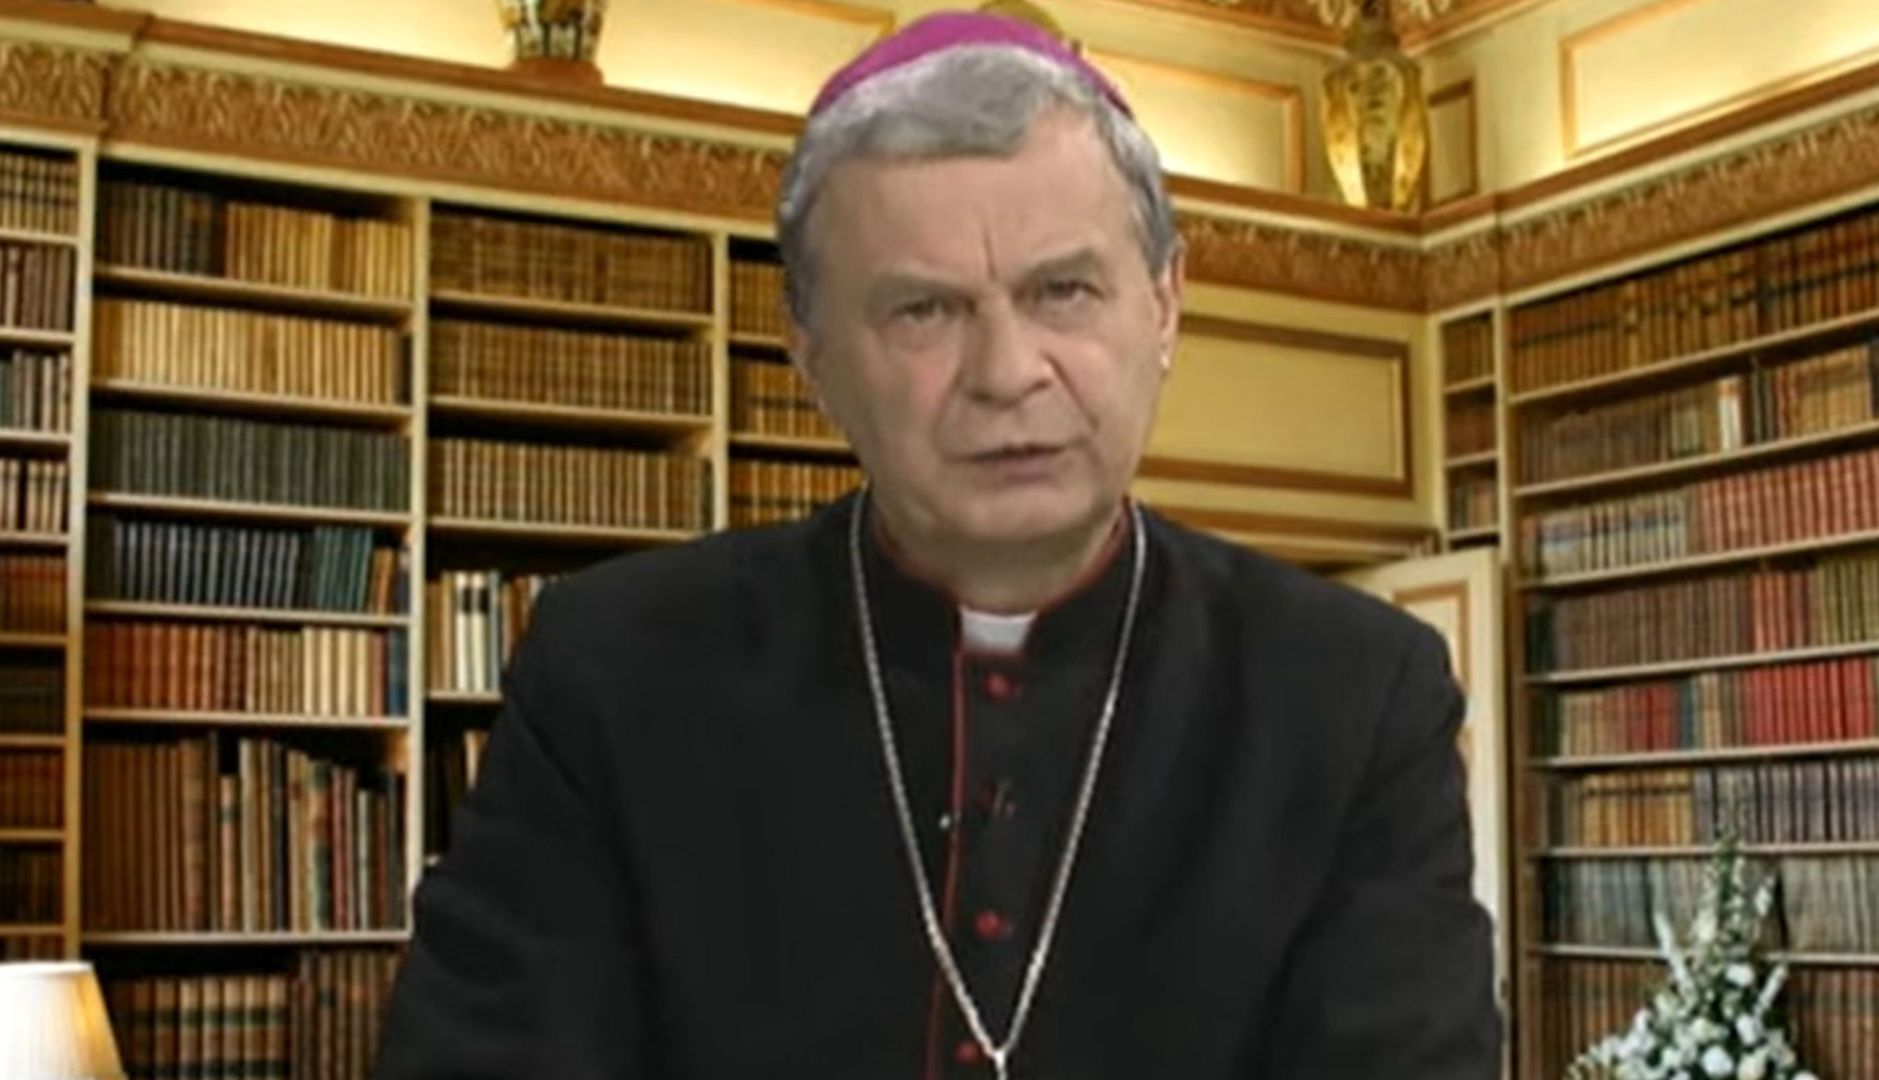 Biskup w telewizji Rydzyka radzi, jak spędzać wakacje. "Dobry moment"